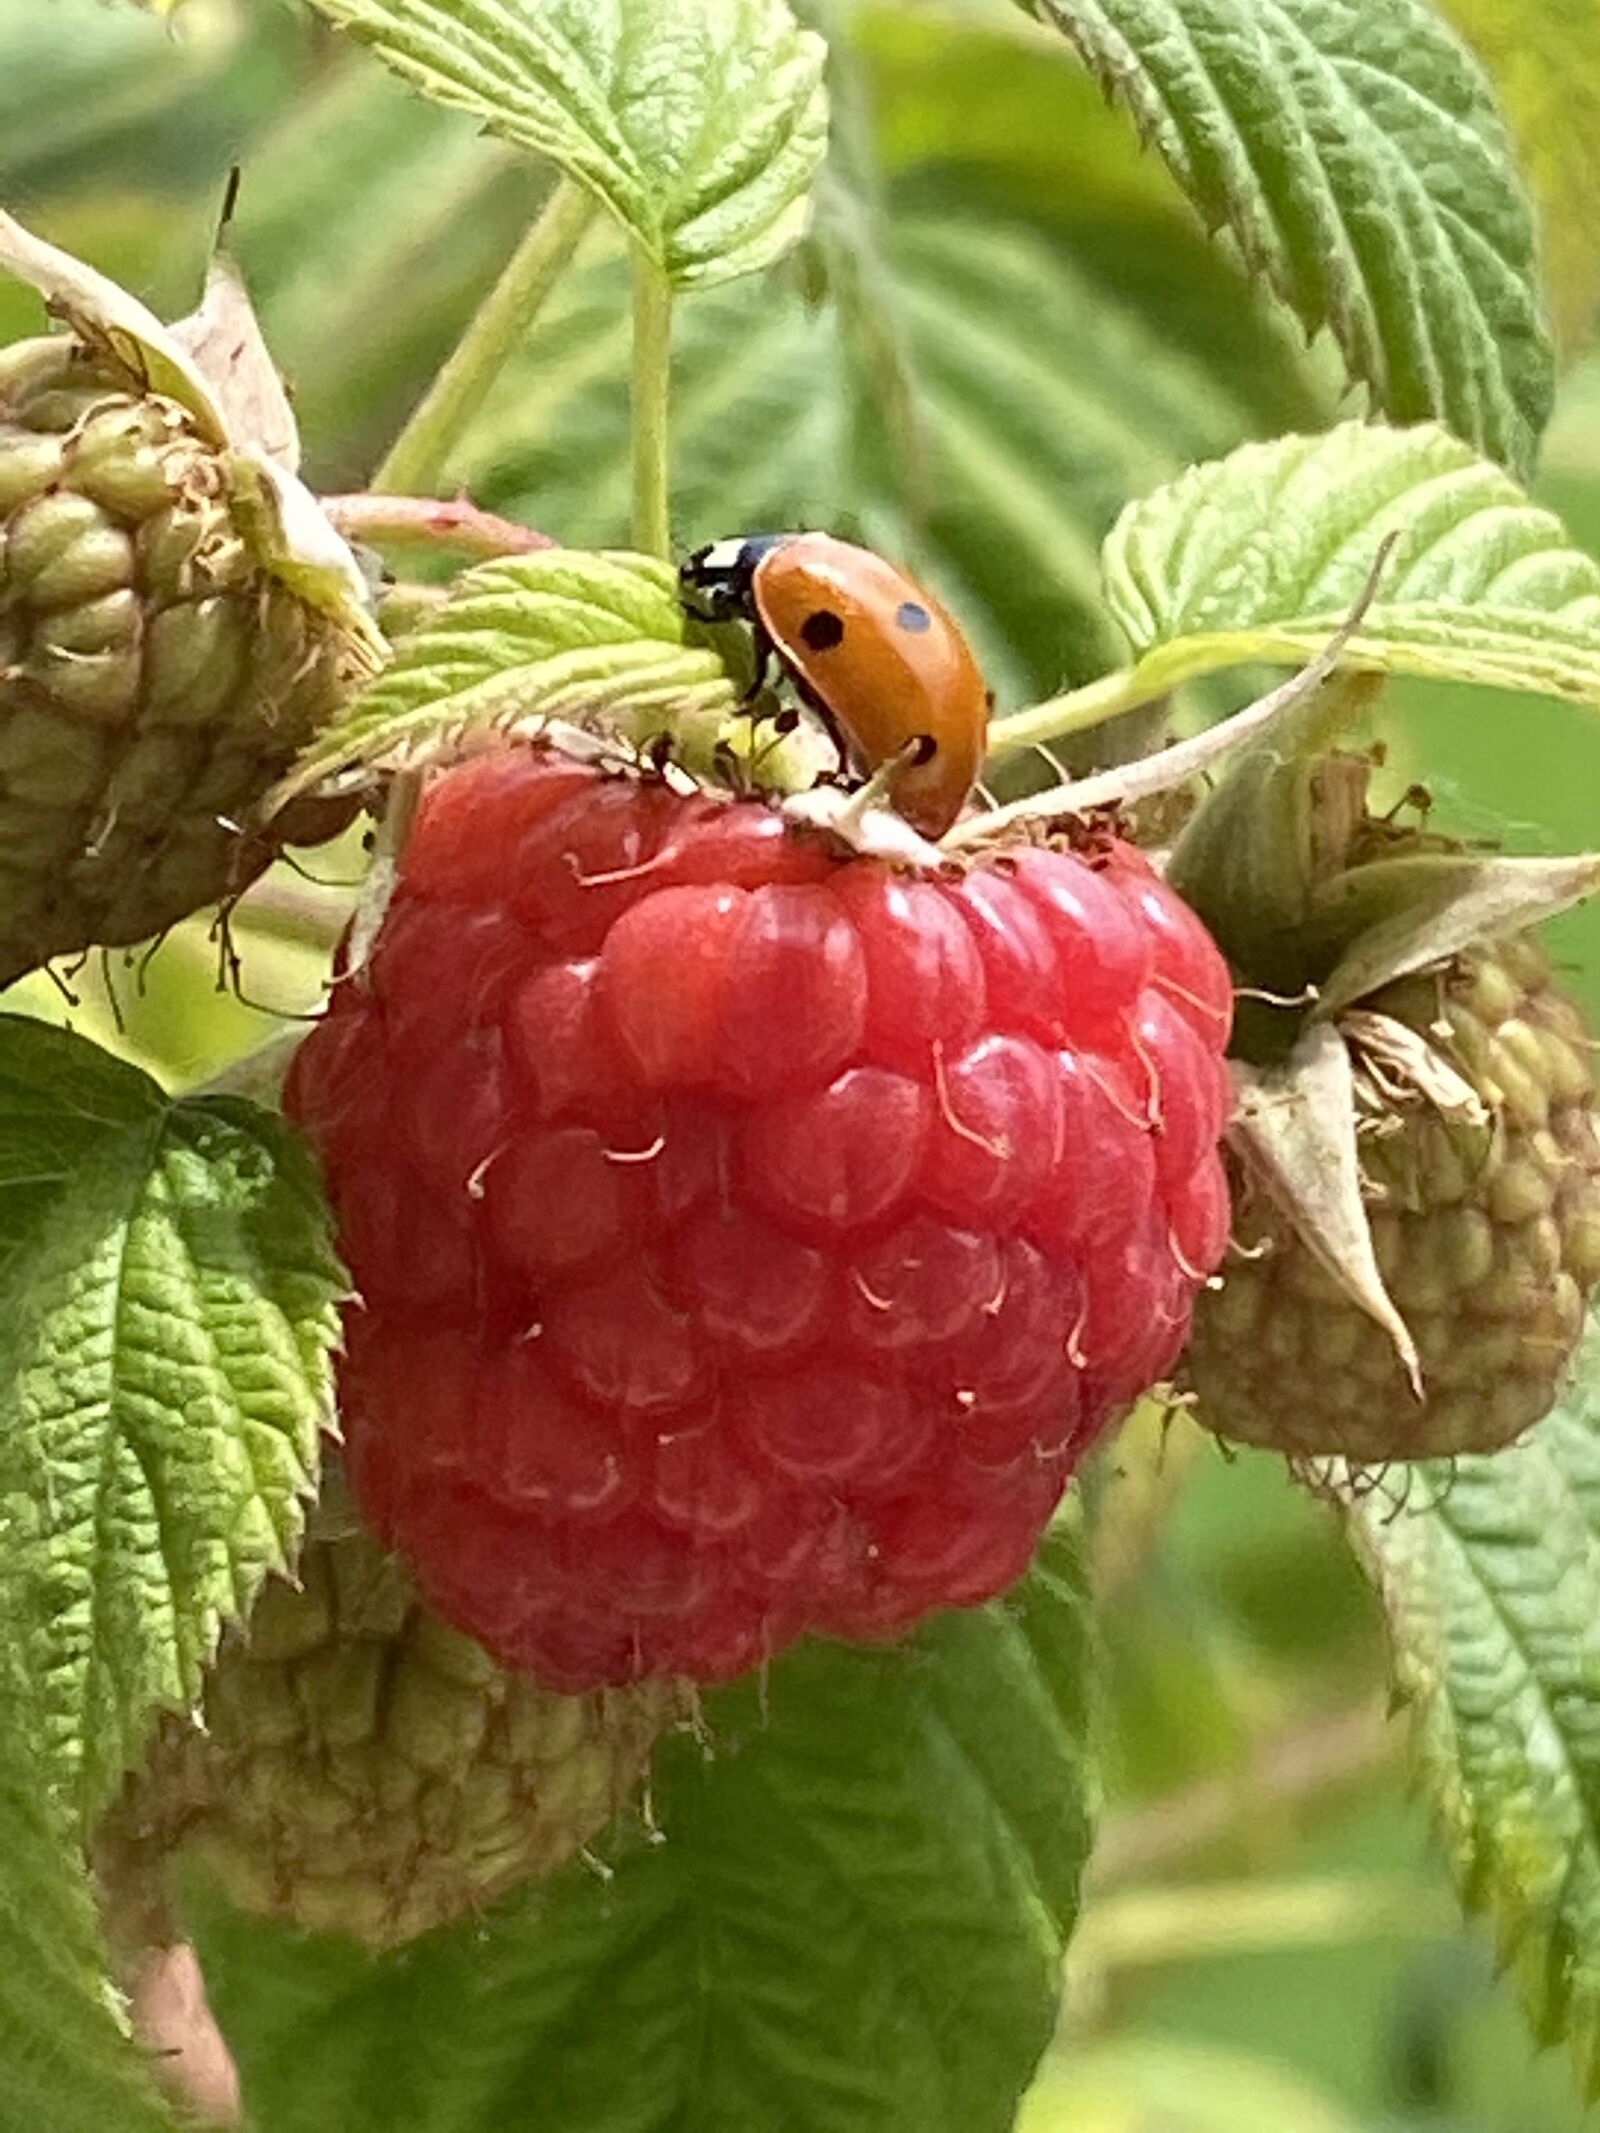 Apple iPhone 11 Pro Max sample photo. Ladybug, raspberry, nature photography